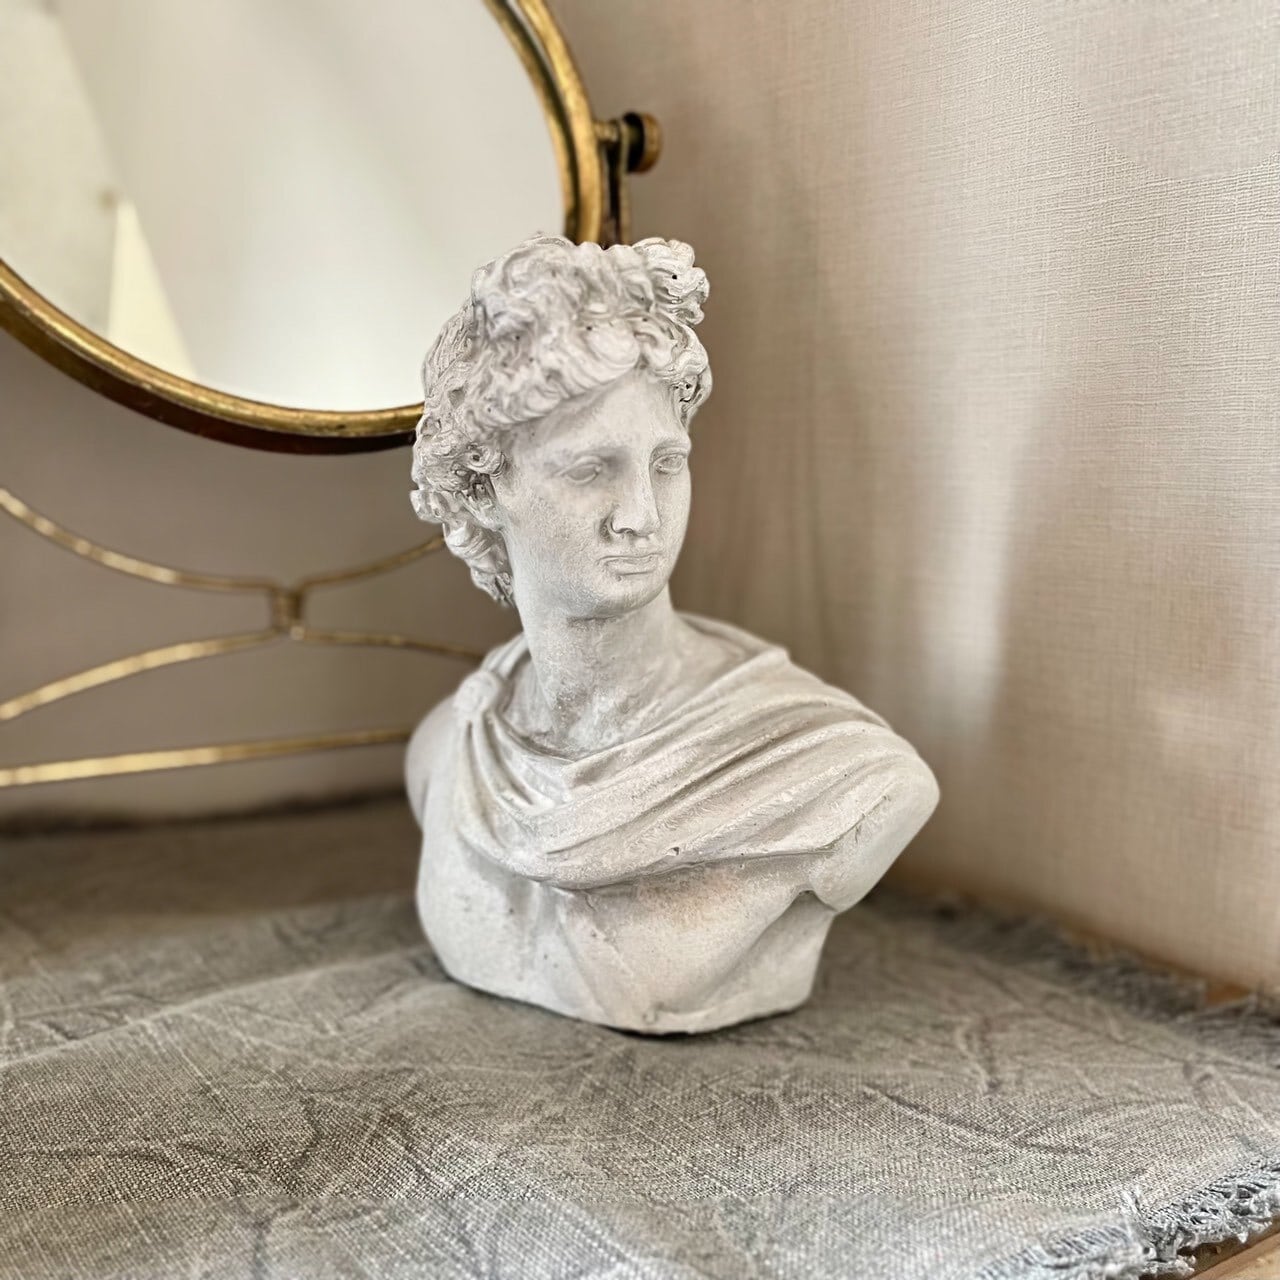 石膏像 アグリッパ 高さ約61cm - 彫刻・オブジェ